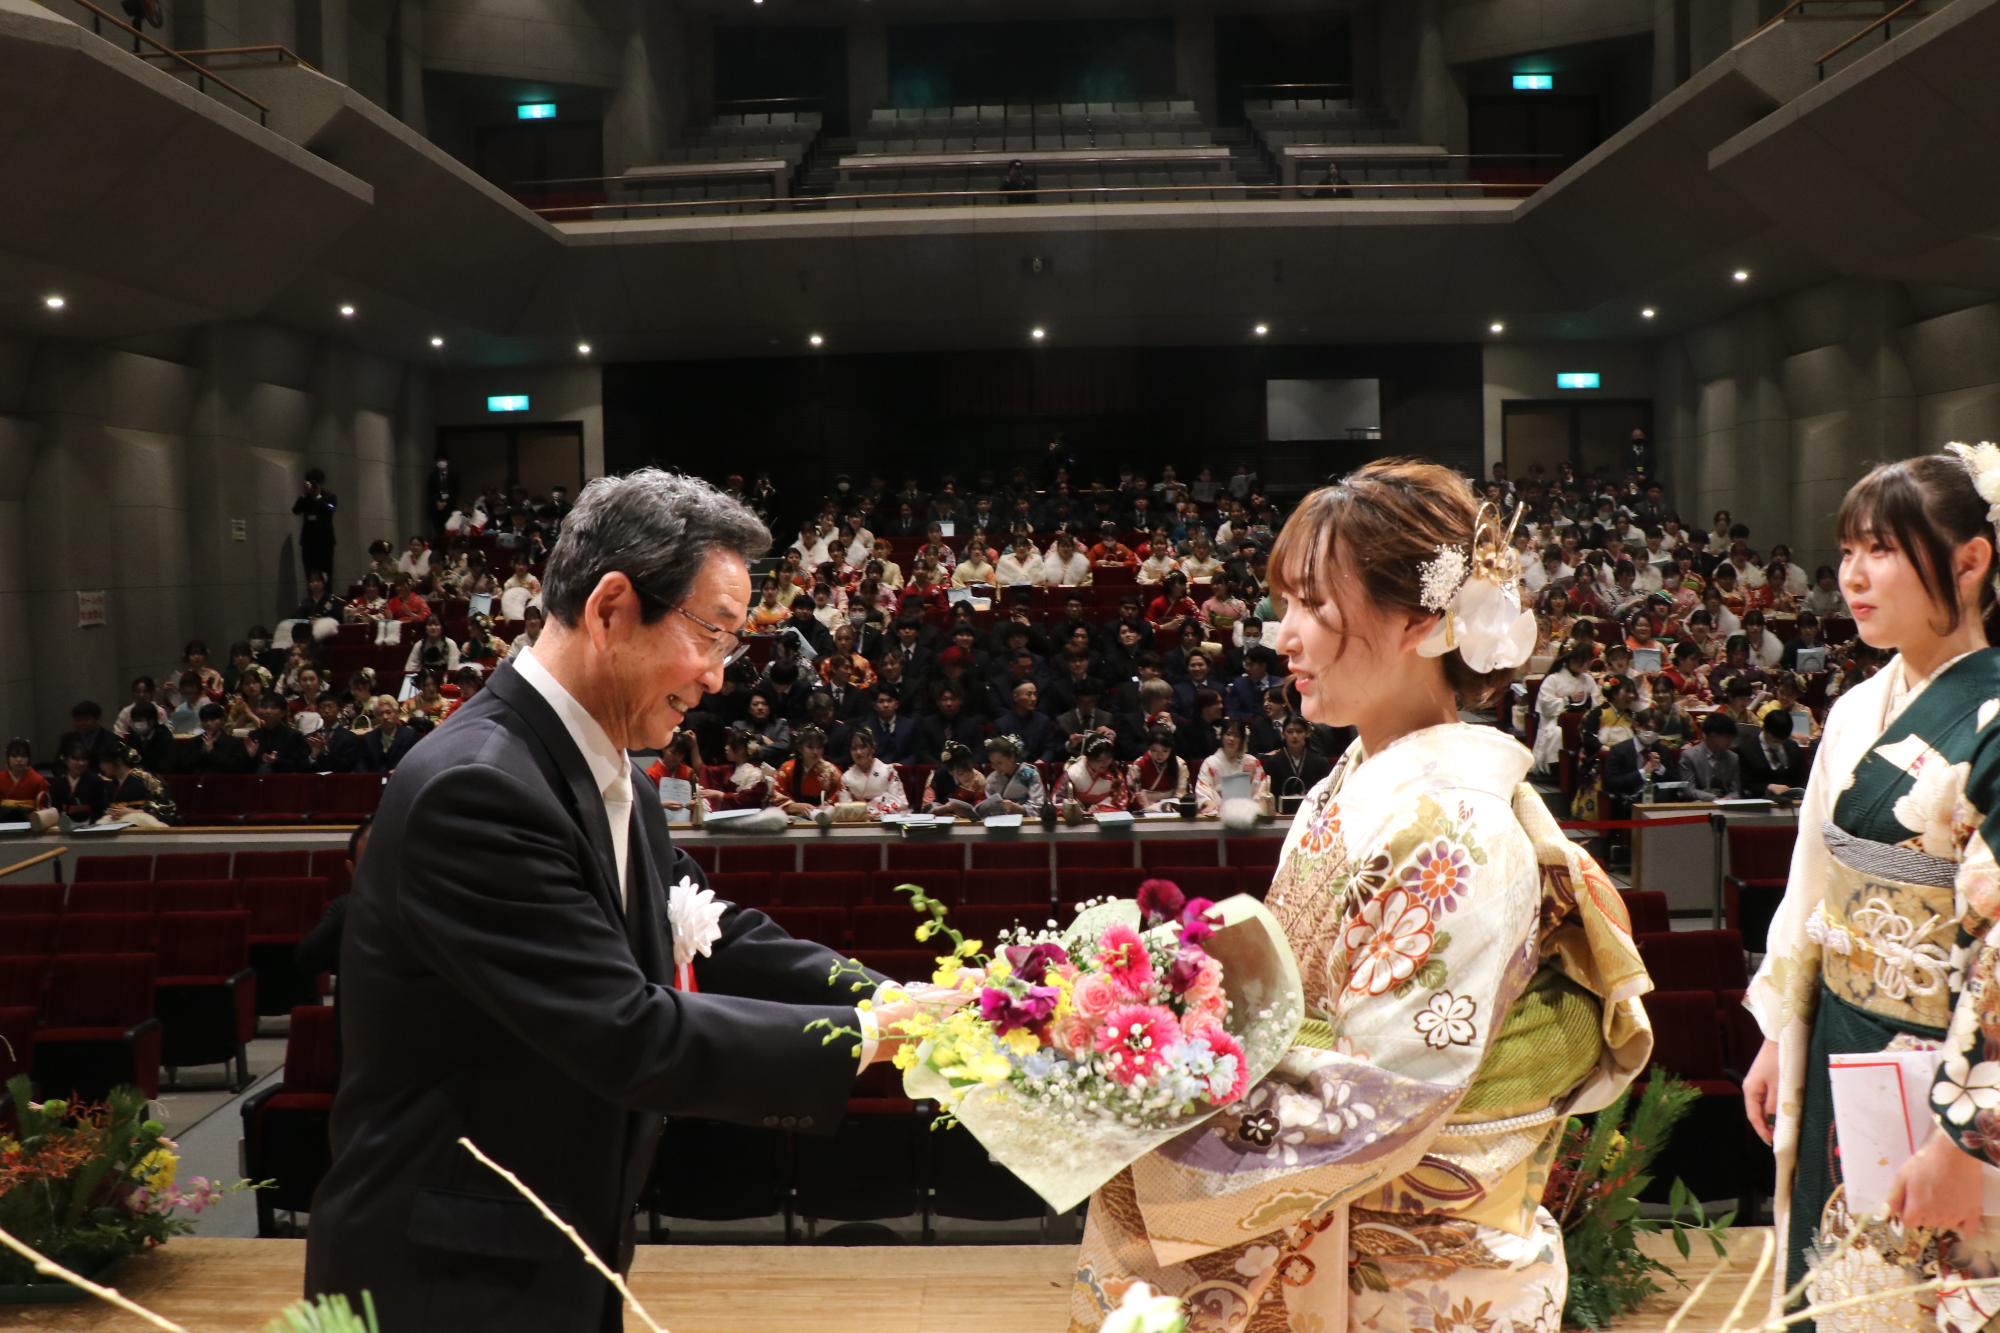 山崎文化会館のステージ上で新成人を代表して、市長からお祝いの花束を受け取る鳥居優里さん